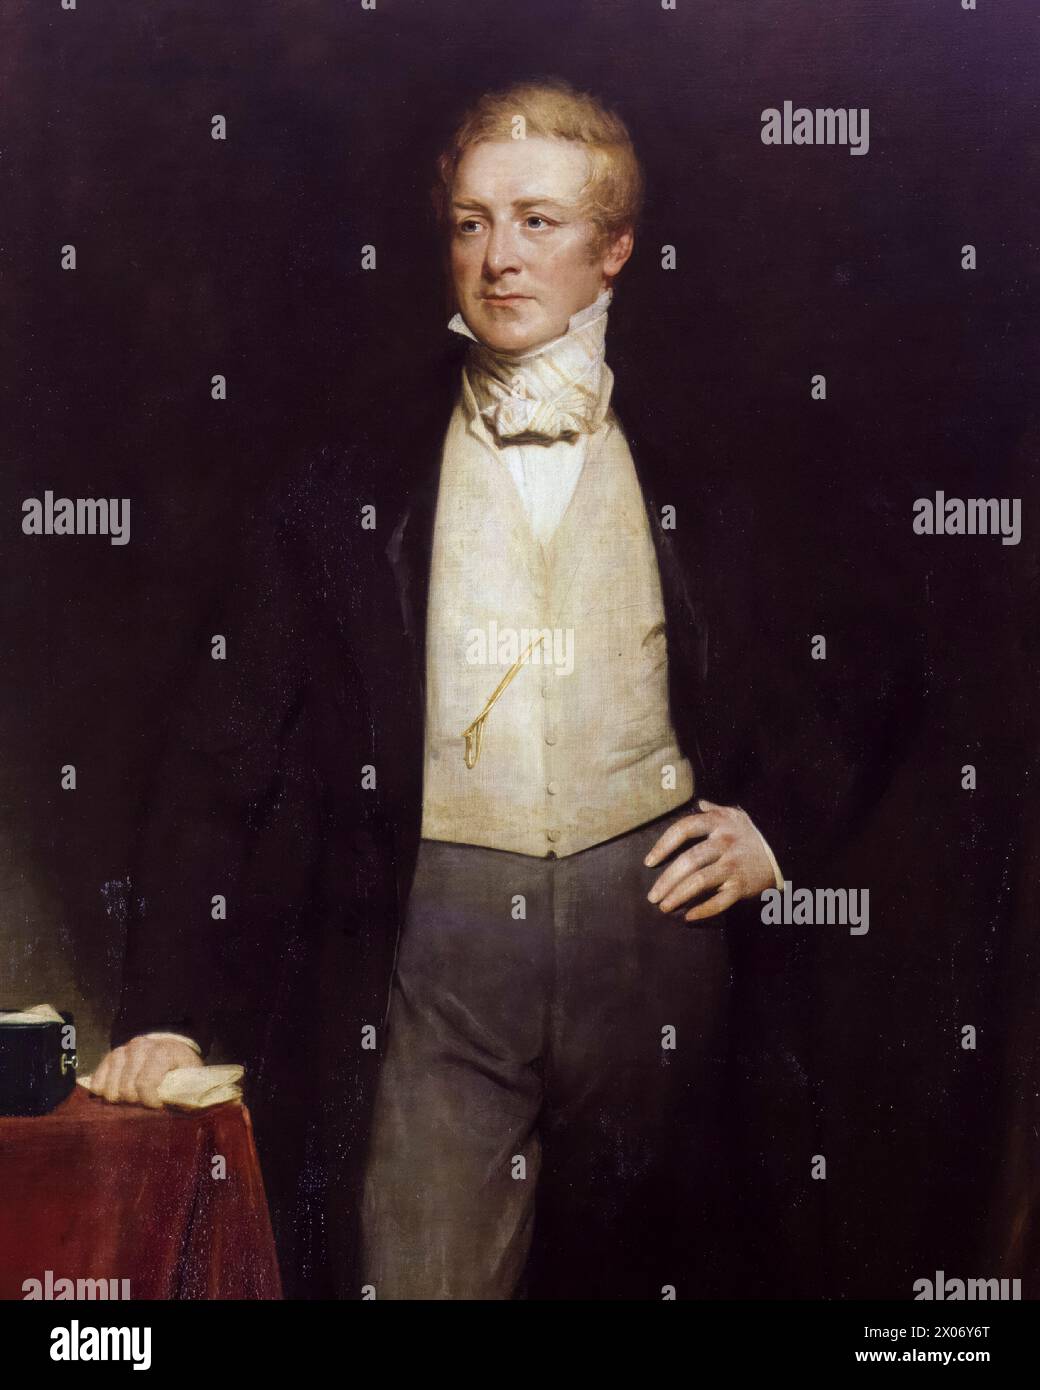 Sir Robert Peel (1788-1850), 2e baronnet, deux fois premier ministre du Royaume-Uni, 1834-1835 et 1841-1846, portrait peint à l'huile sur toile par Henry William Pickersgill, avant 1875 Banque D'Images